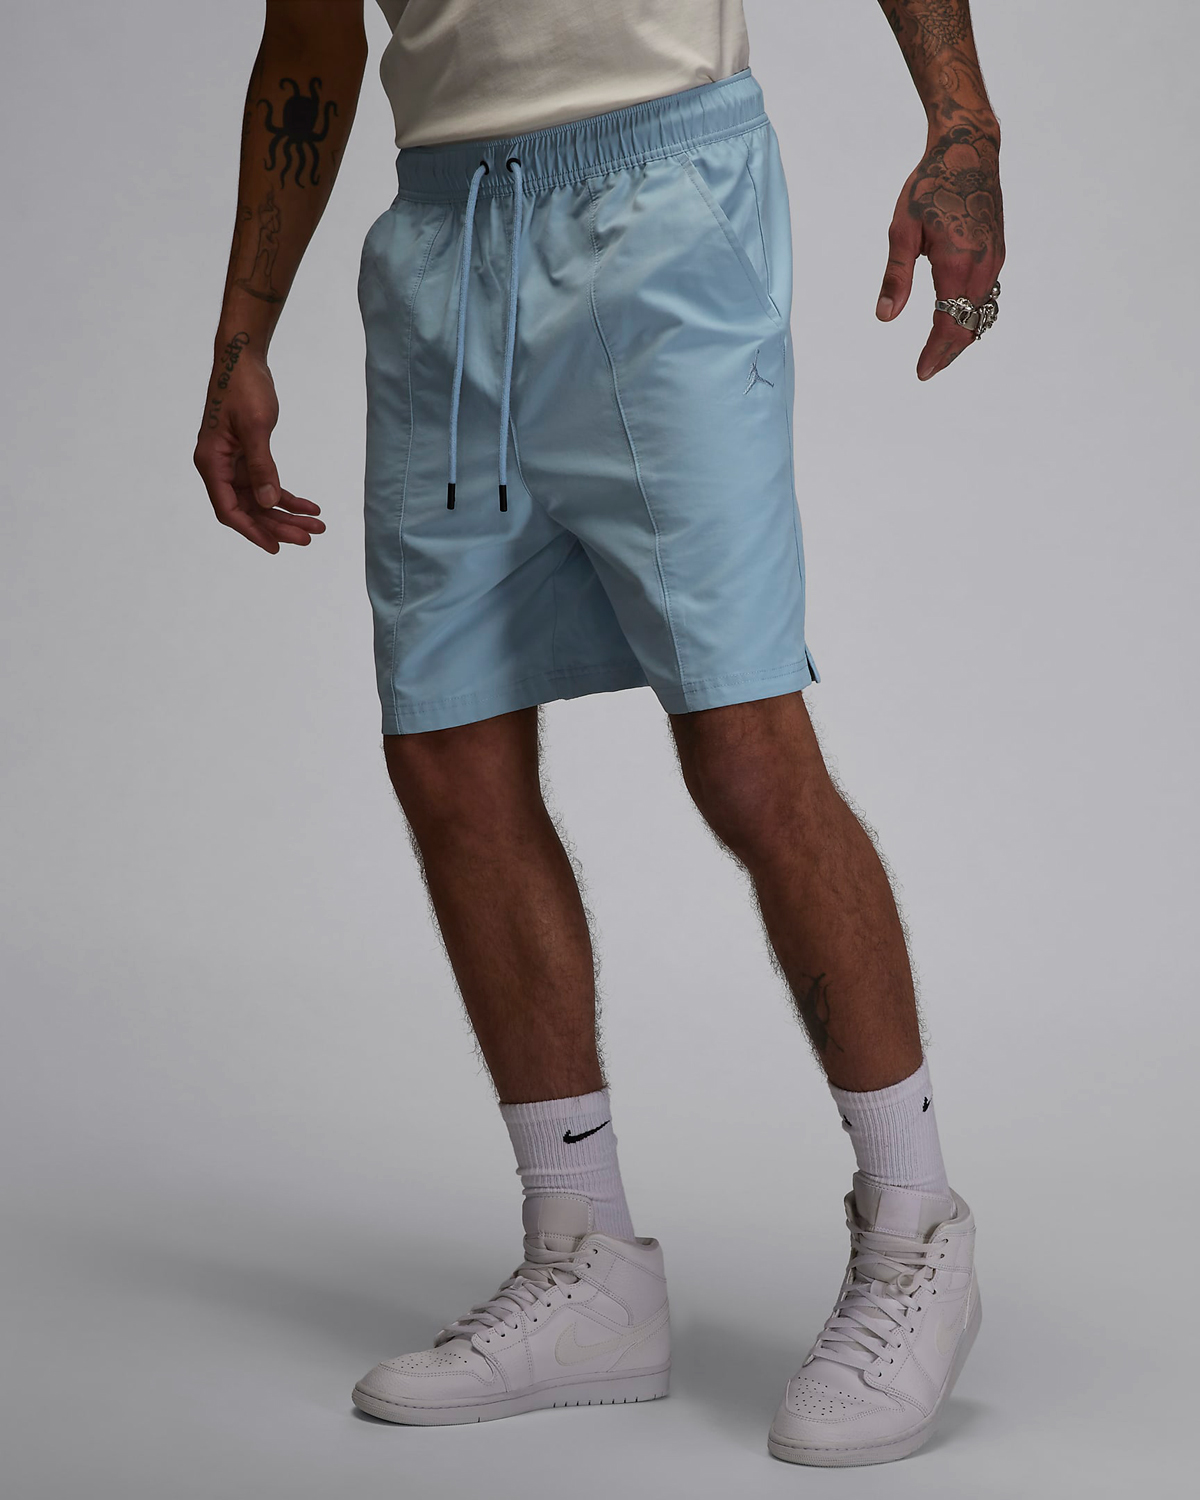 Jordan-Essentials-Woven-Shorts-Blue-Grey-1